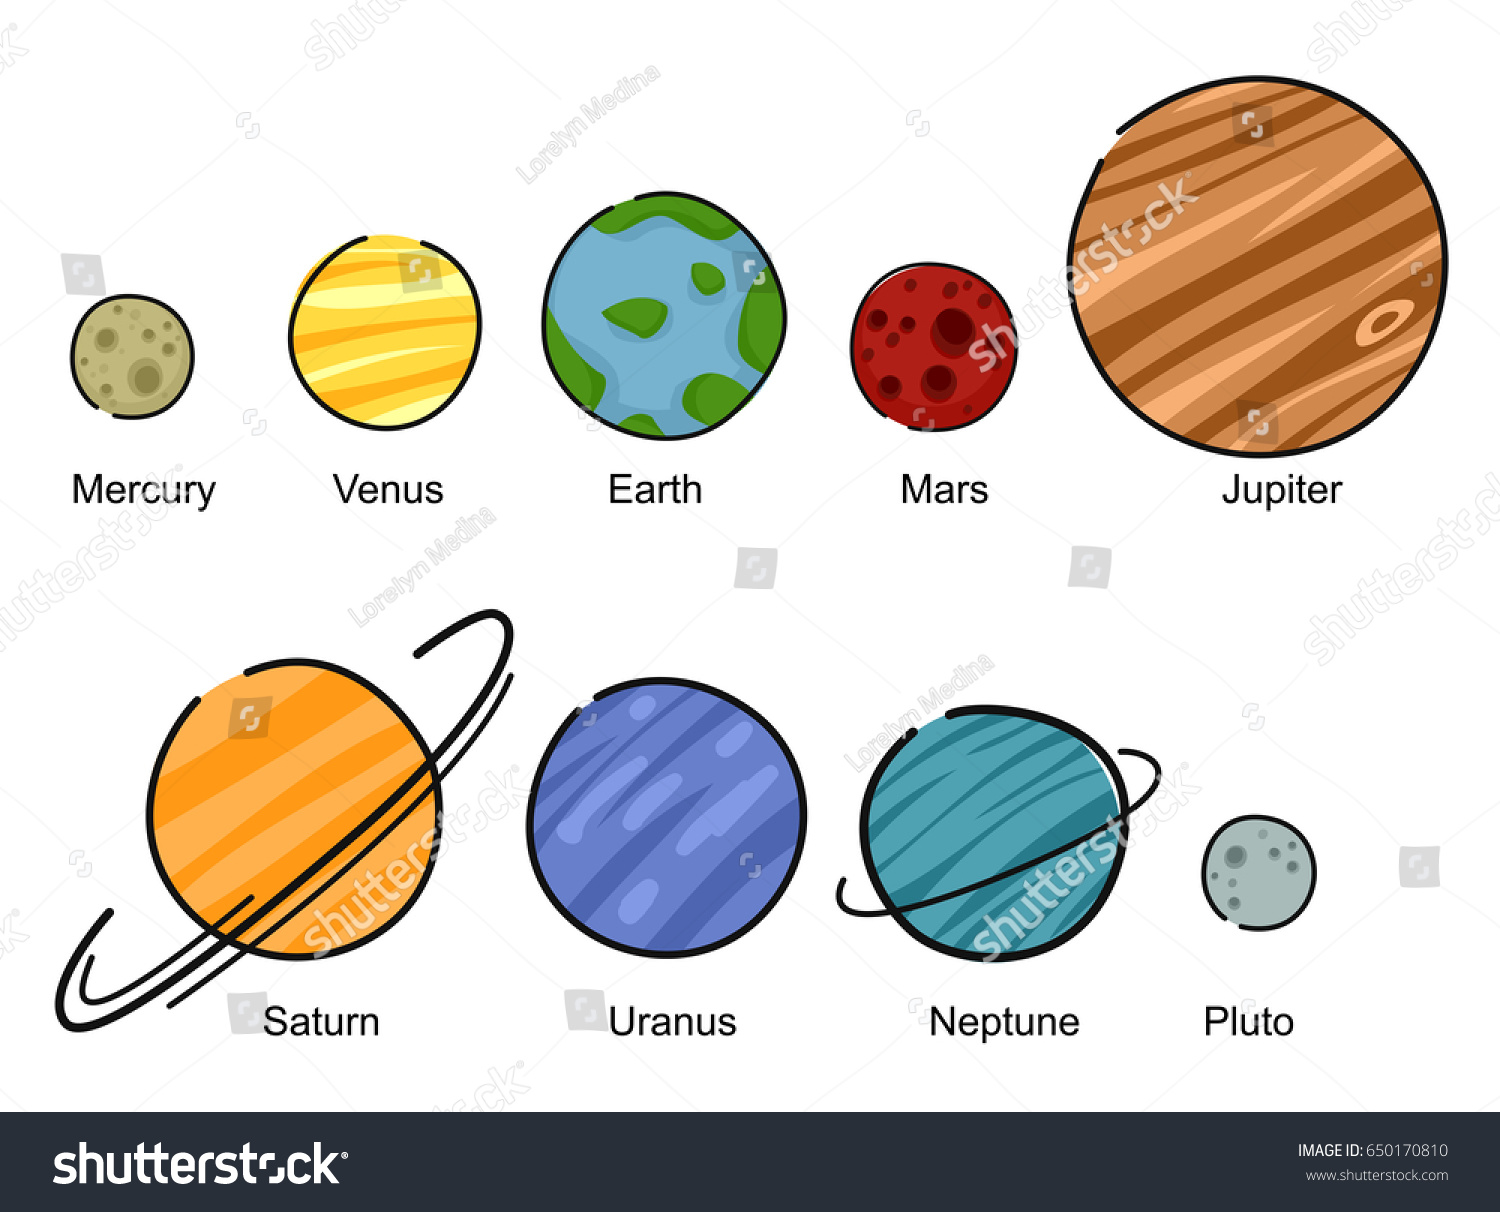 Earth Jupiter Mars Mercury Neptune Pluto Saturn Uranus Venus вектор